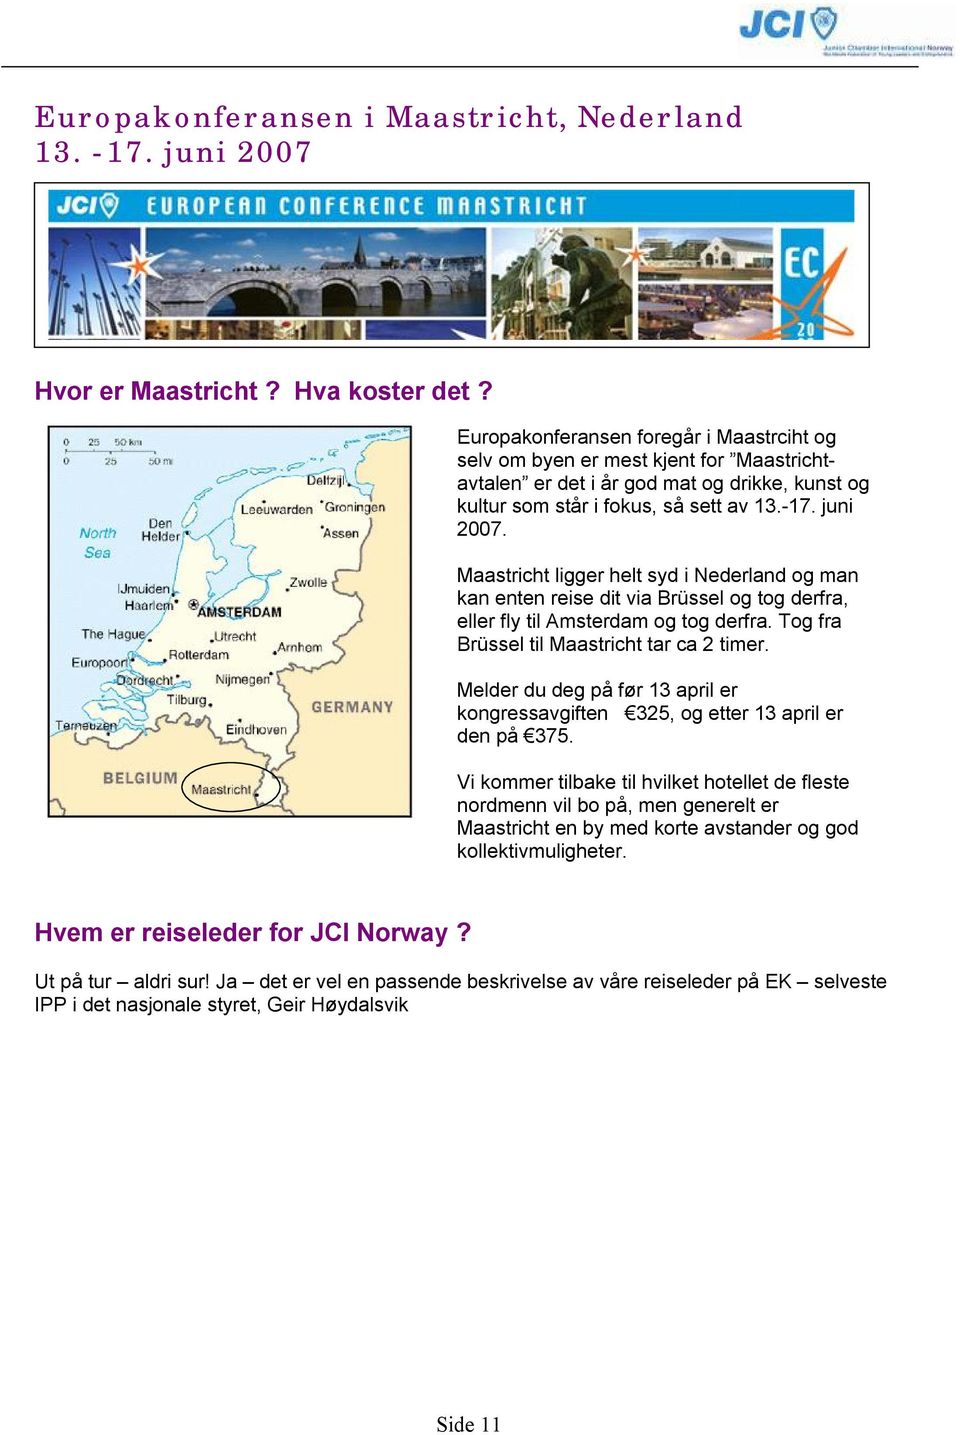 Maastricht ligger helt syd i Nederland og man kan enten reise dit via Brüssel og tog derfra, eller fly til Amsterdam og tog derfra. Tog fra Brüssel til Maastricht tar ca 2 timer.